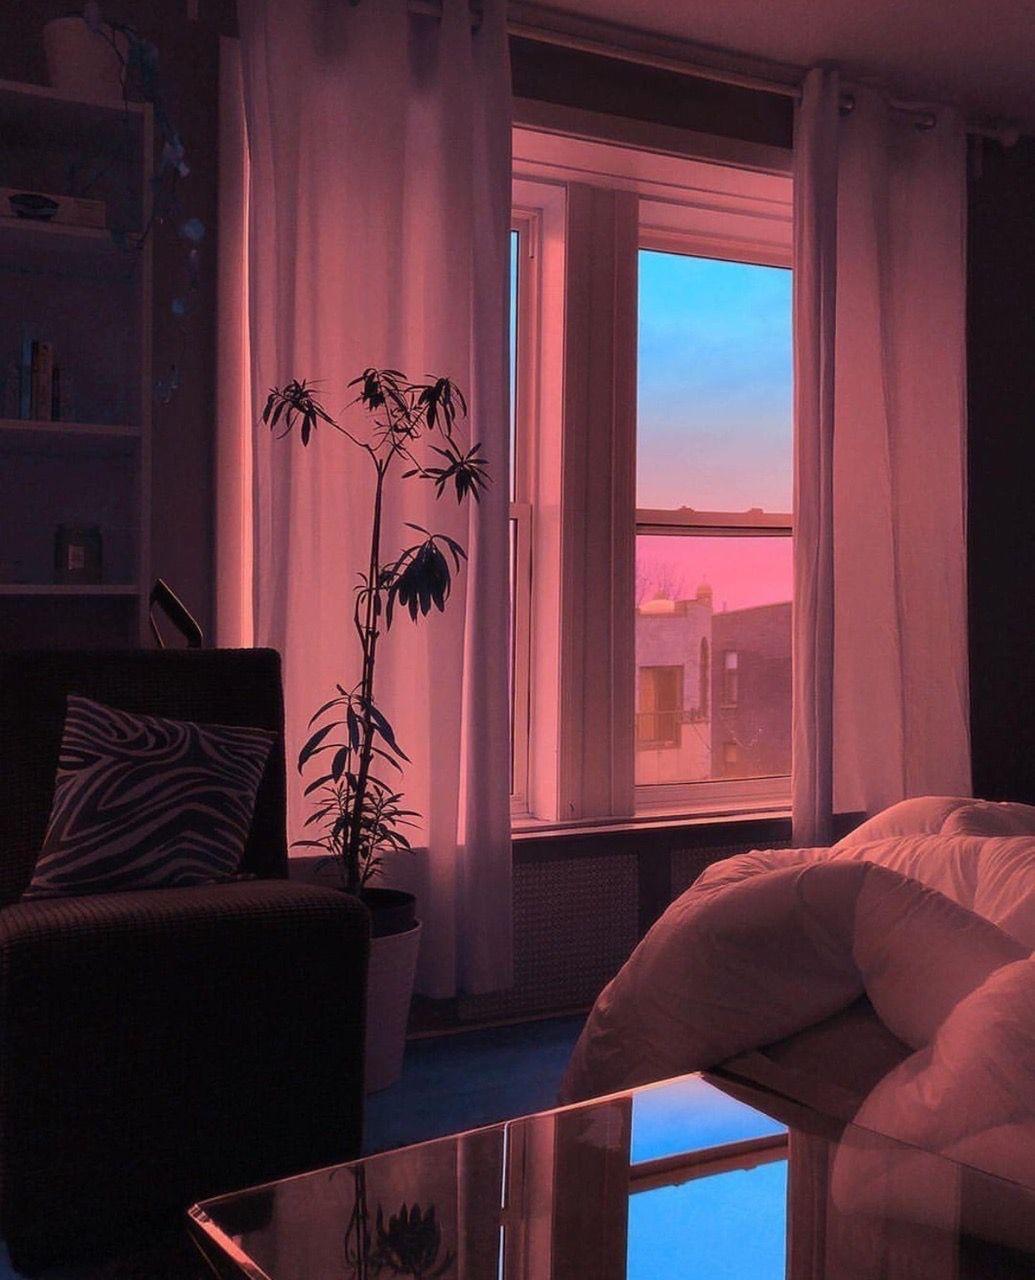 Bạn muốn có một phòng ngủ đẹp và thẩm mỹ, hãy tham khảo hình ảnh phòng ngủ thẩm mỹ đầy ấn tượng. Những đường nét tinh tế và màu sắc trang nhã đem đến cho bạn cảm giác thư giãn và yên bình sau những giờ làm việc căng thẳng.